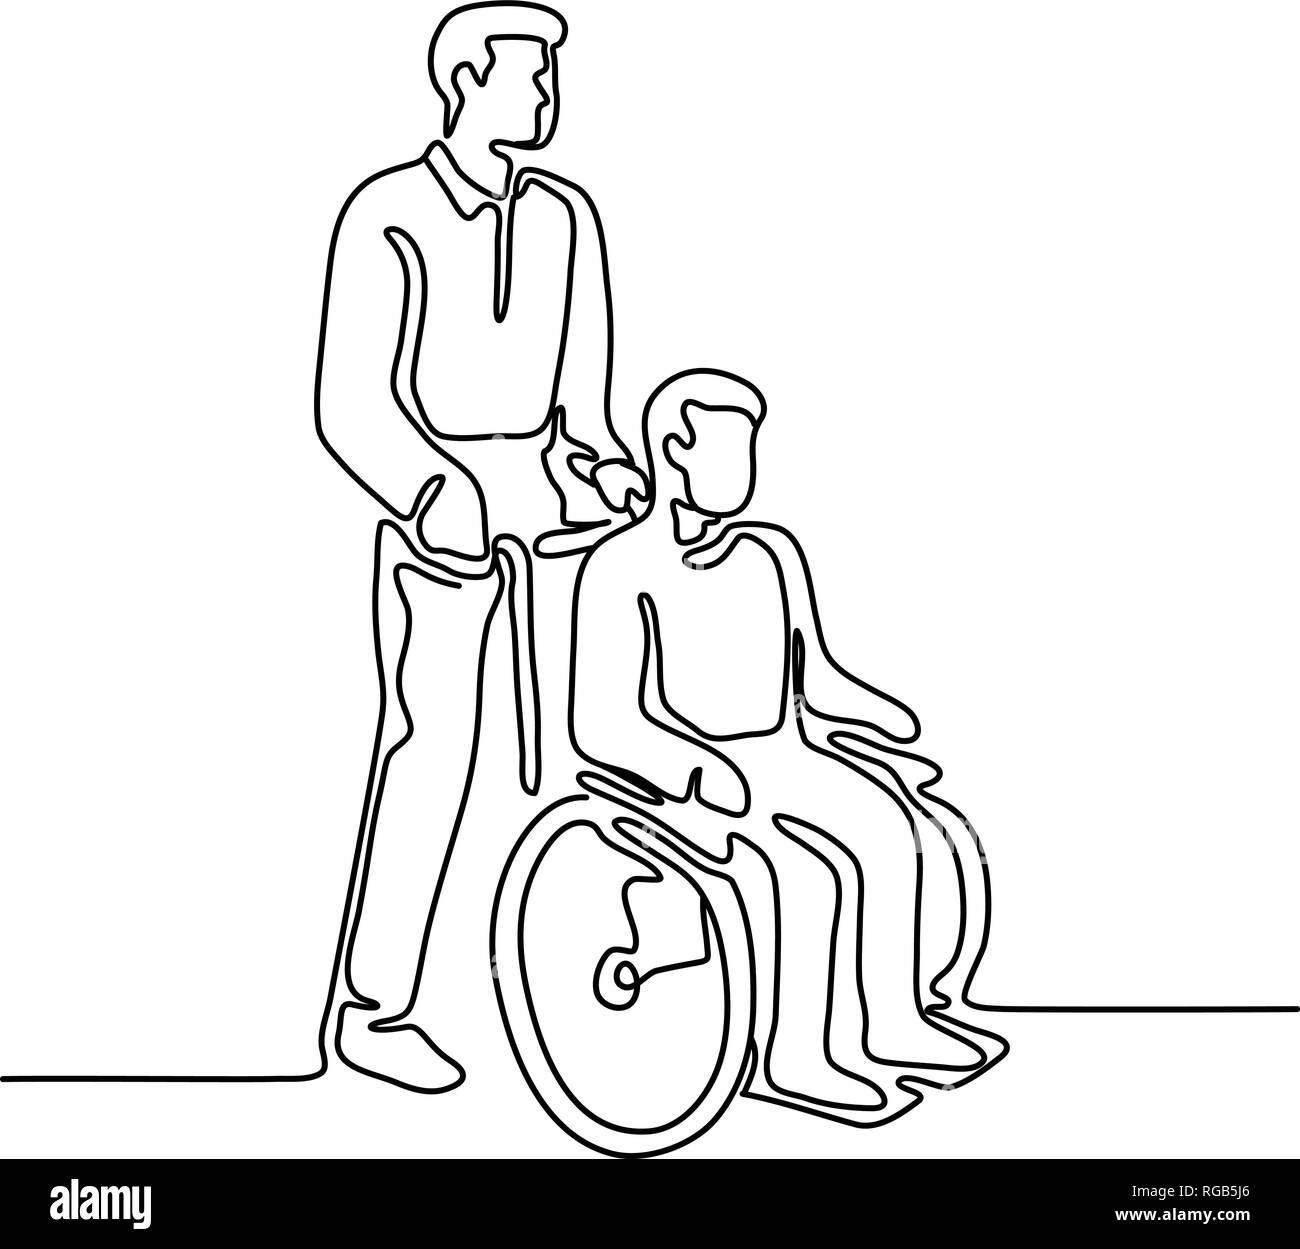 Ligne continue illustration d'un patient à l'hôpital ou désactiver personne avec handicap assis ou être pousser sur wheelcahir par un infirmier fait en monolin Illustration de Vecteur